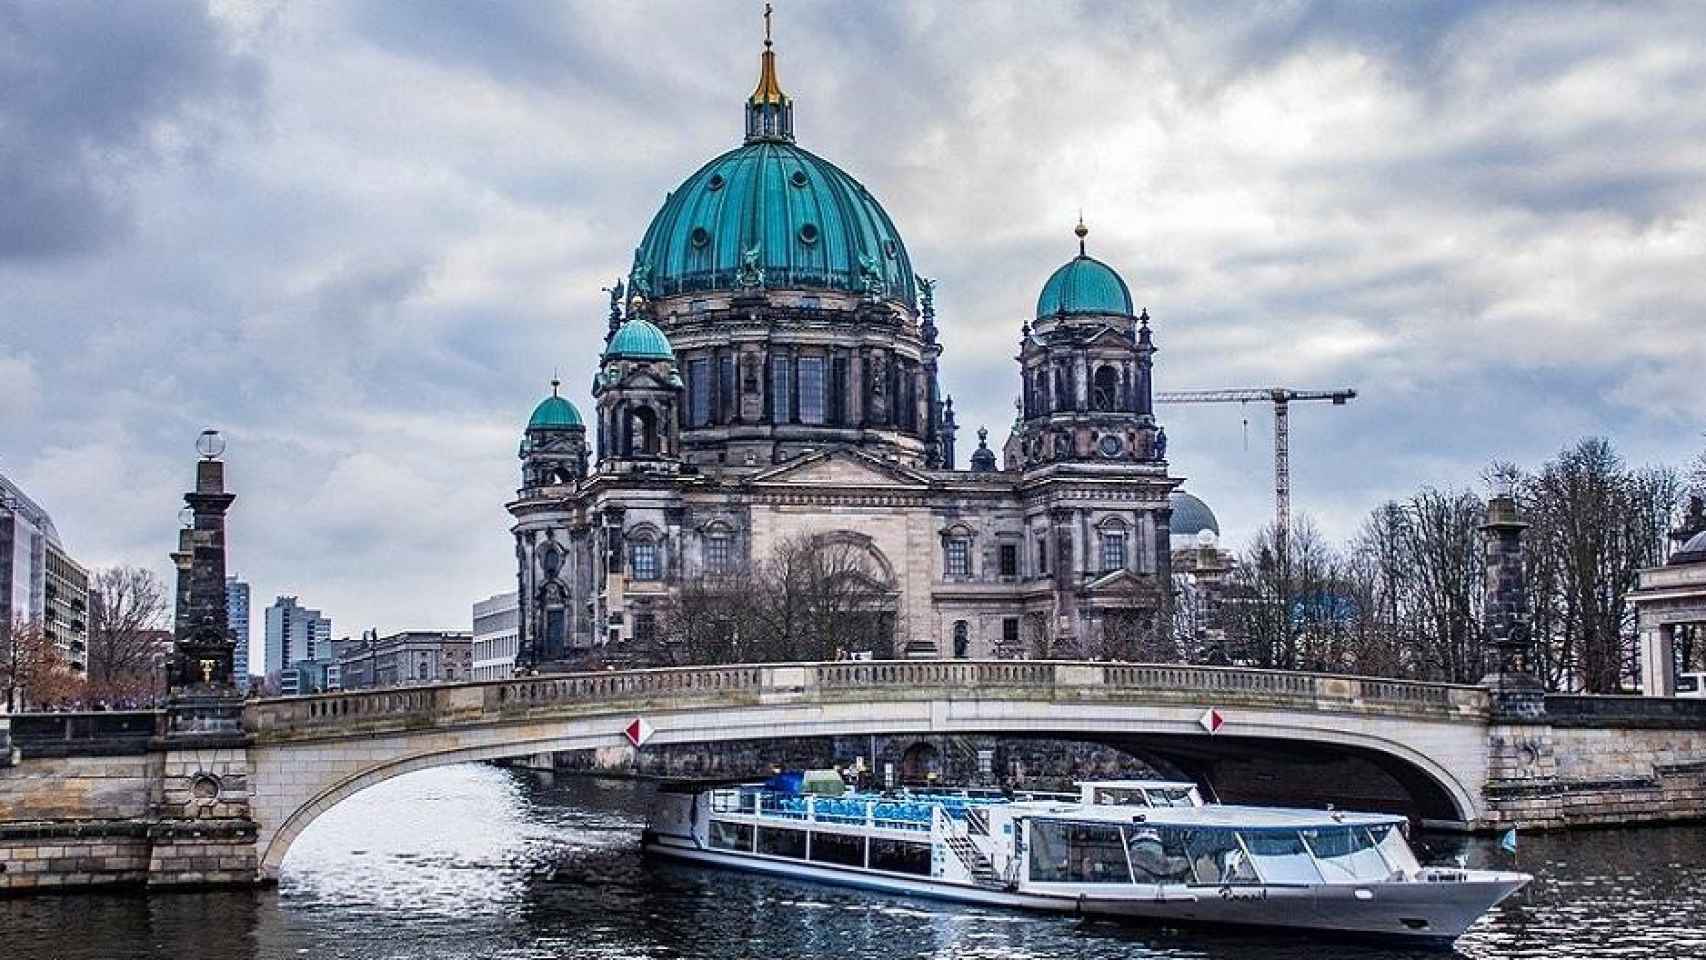 La Berliner Dom y los paseos en barco, incluidos en la Berlin WelcomeCard / Jiriposival0 EN PIXABAY